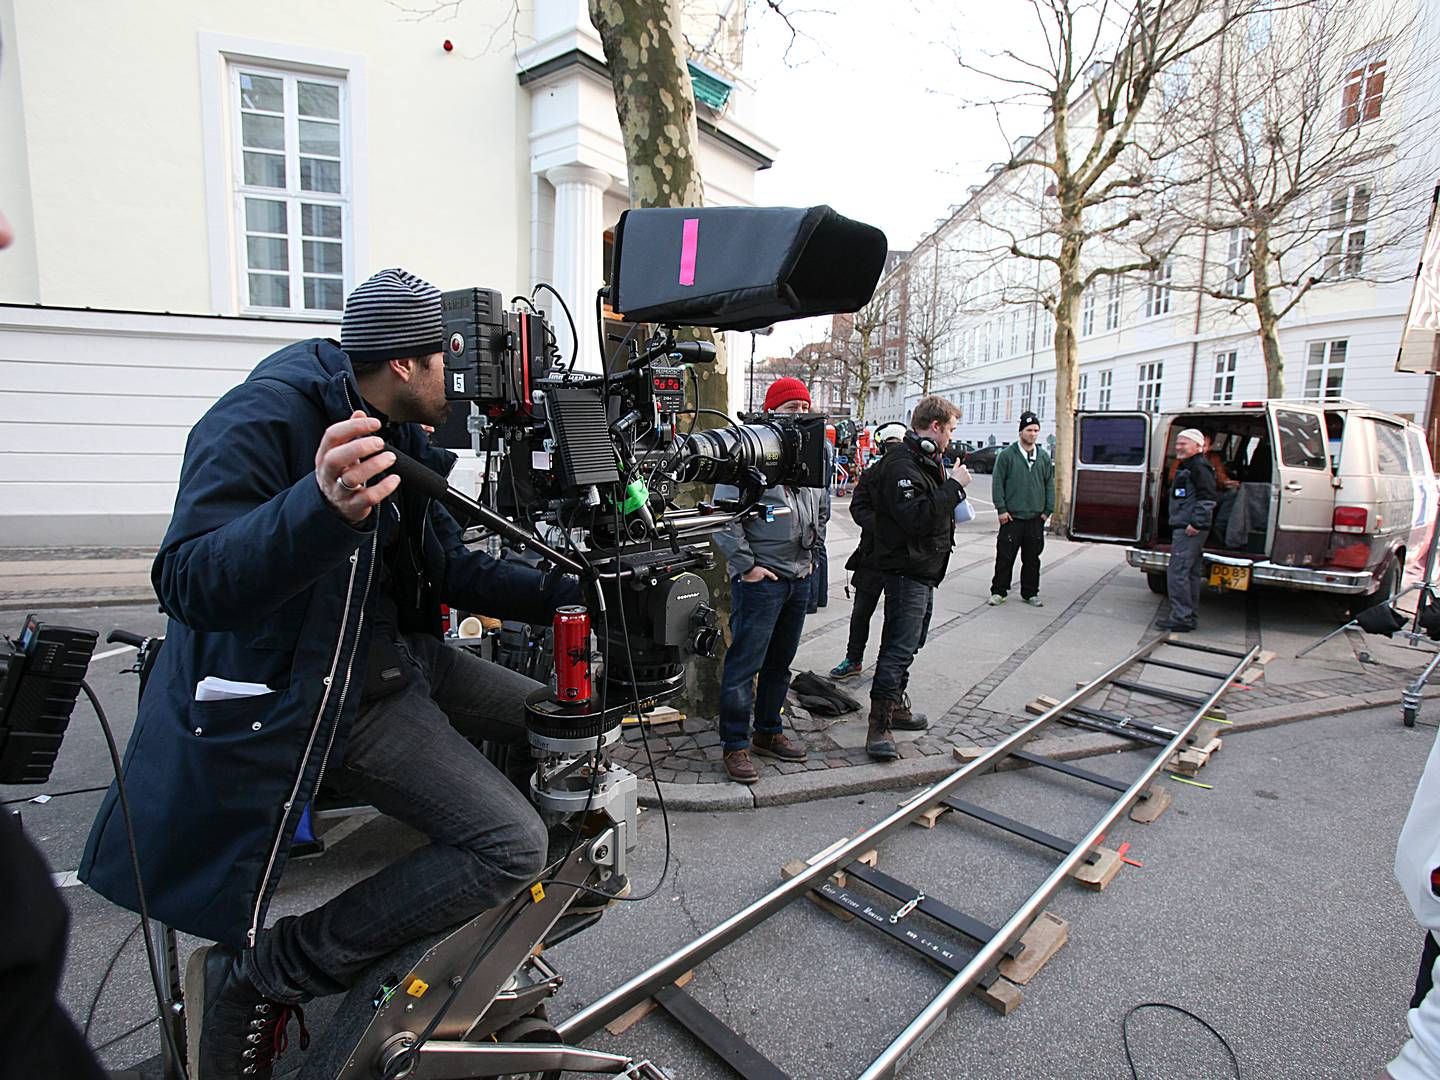 Den europæiske filmindustri er i høj grad afhængig af rabatter til produktion, viser ny rapport. | Photo: Jan Unger